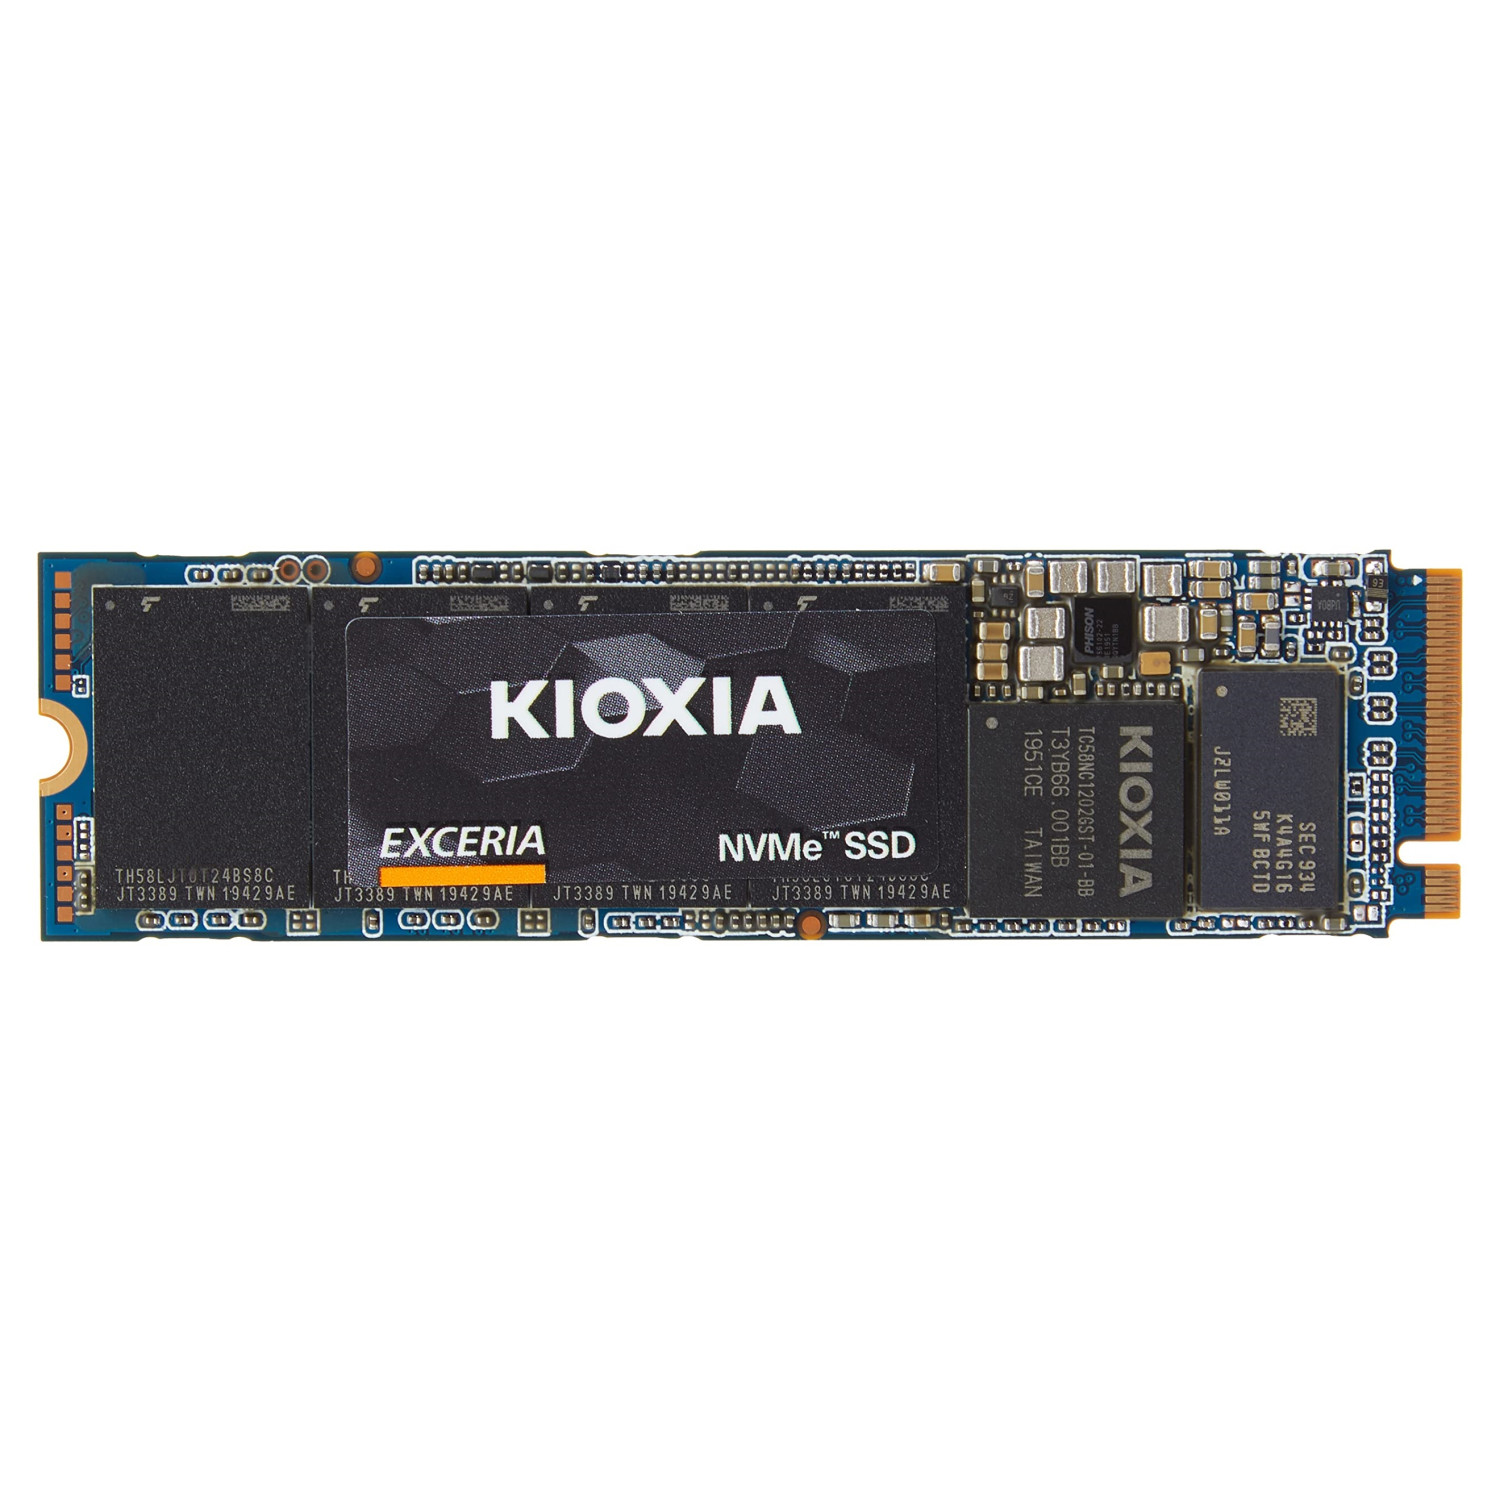 حافظه اس اس دی Kioxia Exceria 1TB